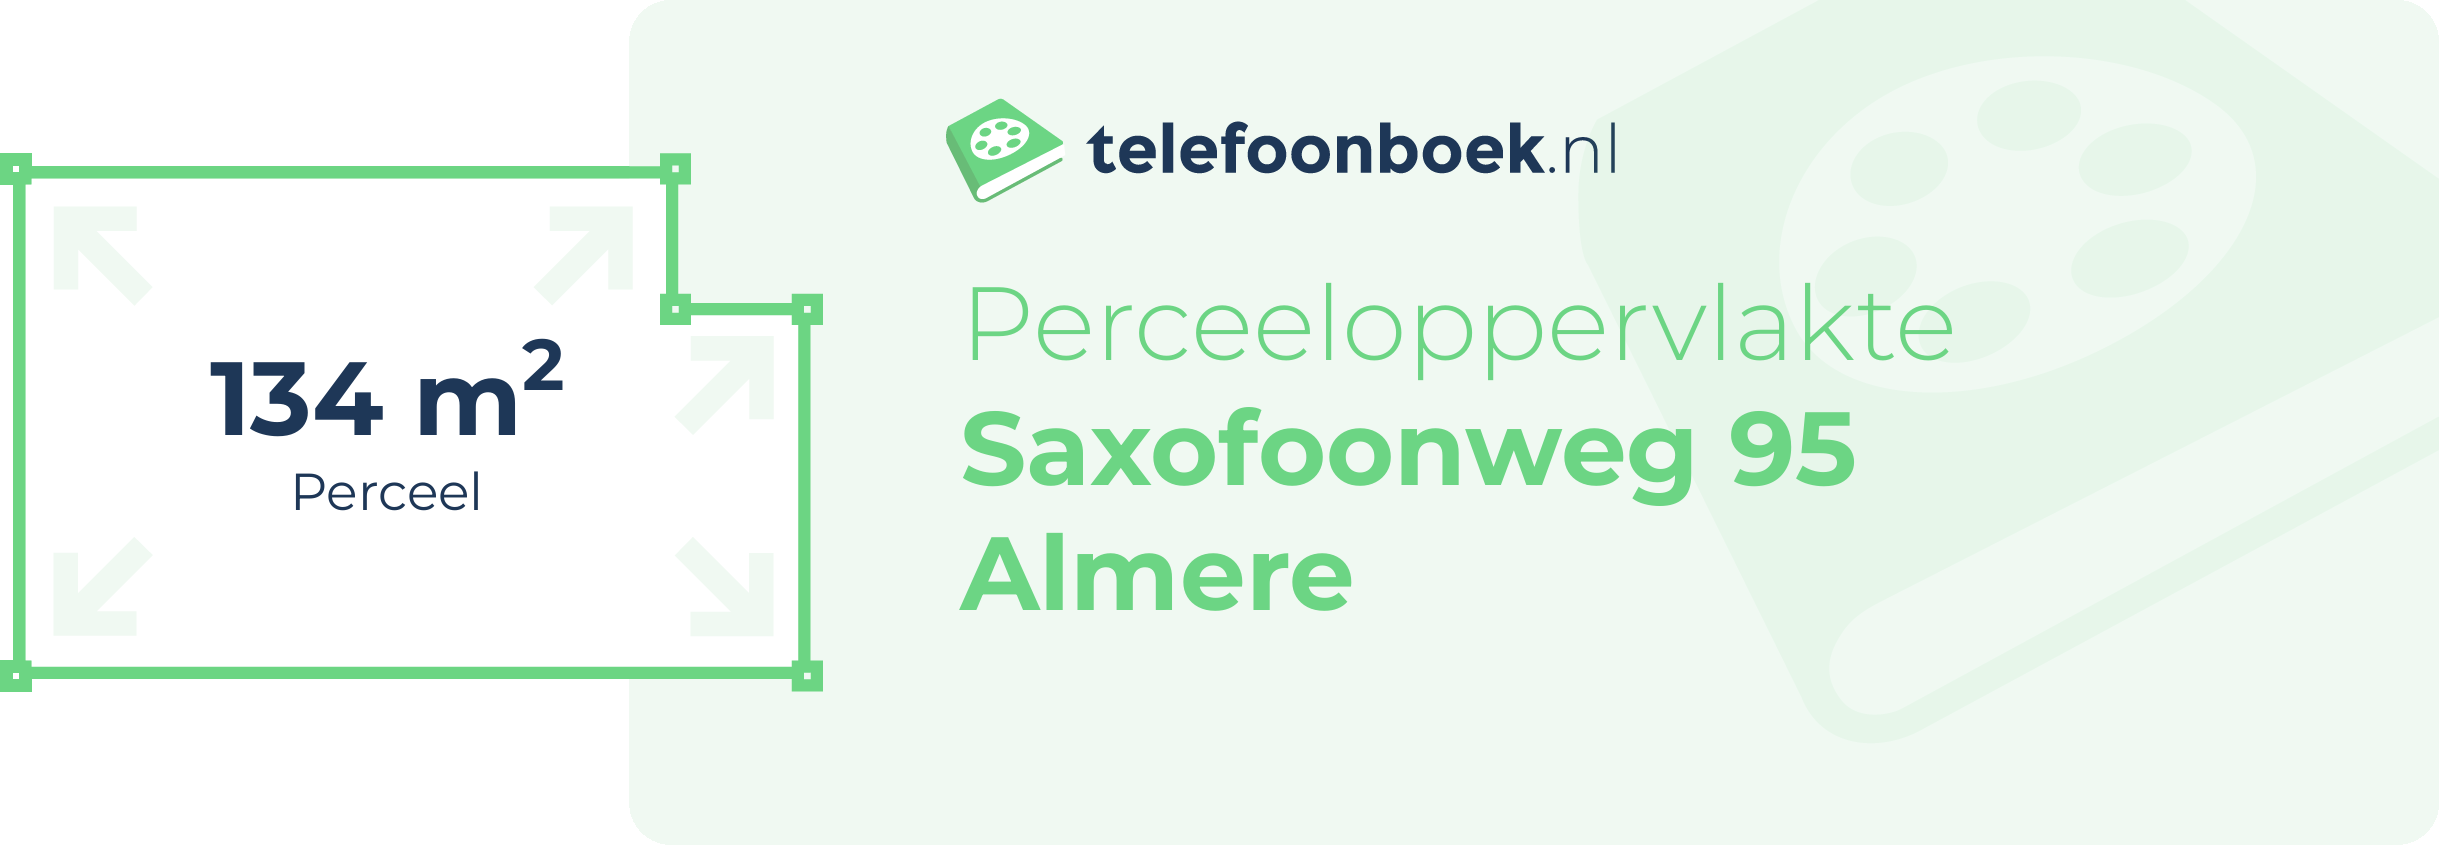 Perceeloppervlakte Saxofoonweg 95 Almere